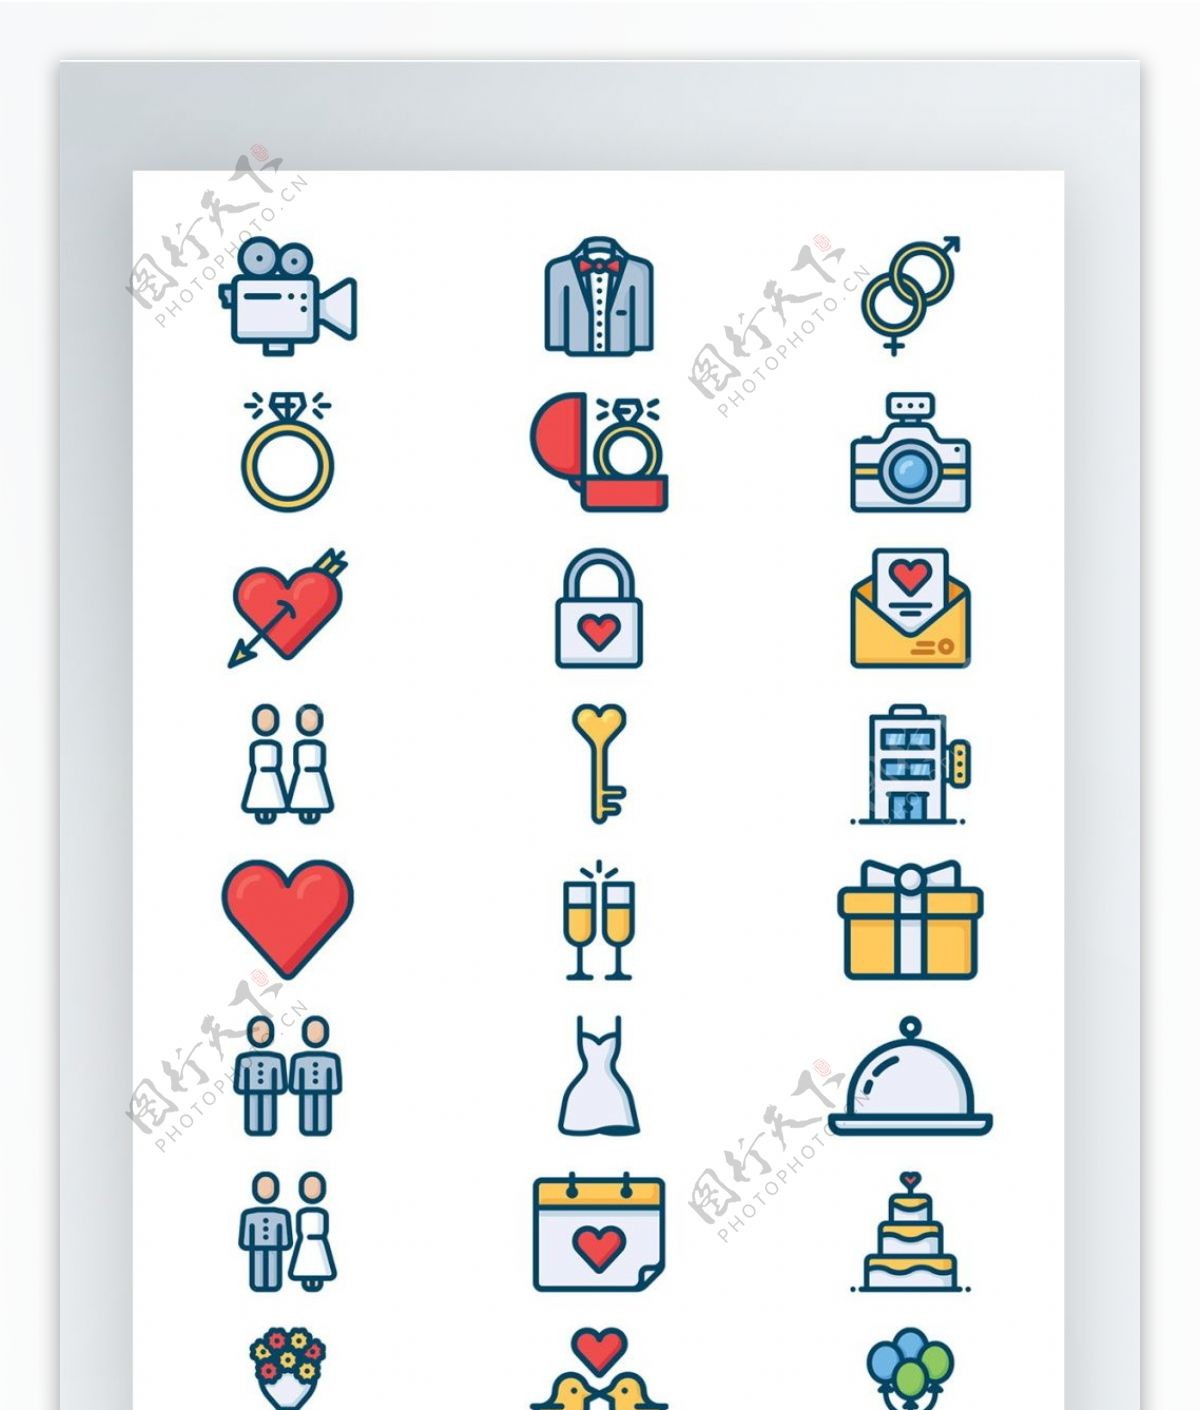 情侣系列手机UI彩色拟物图标矢量AI素材icon